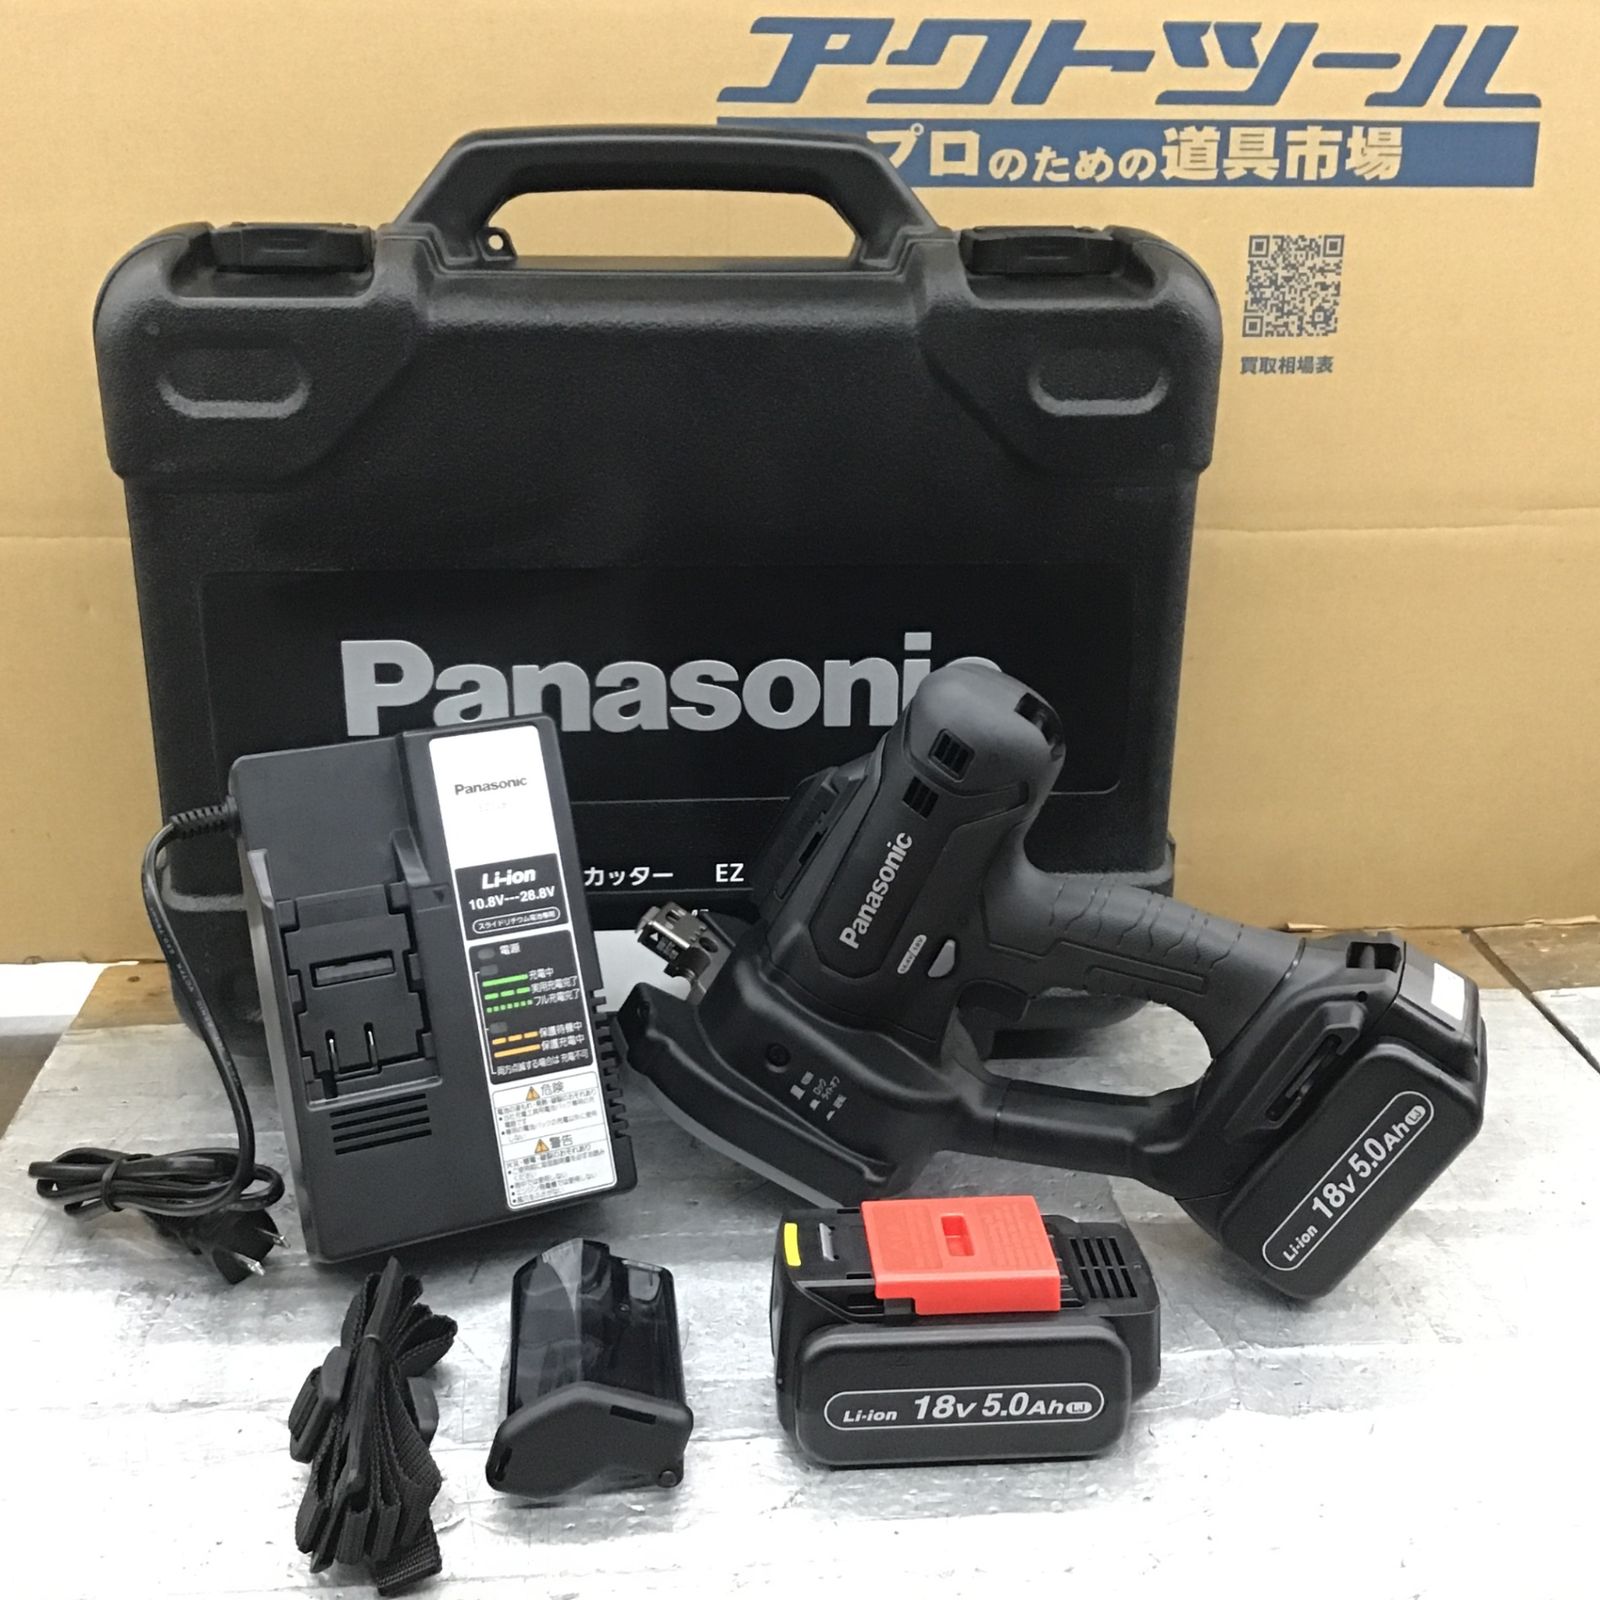 ☆パナソニック(Panasonic) コードレス全ネジカッター EZ45A8LJ2G-B ...